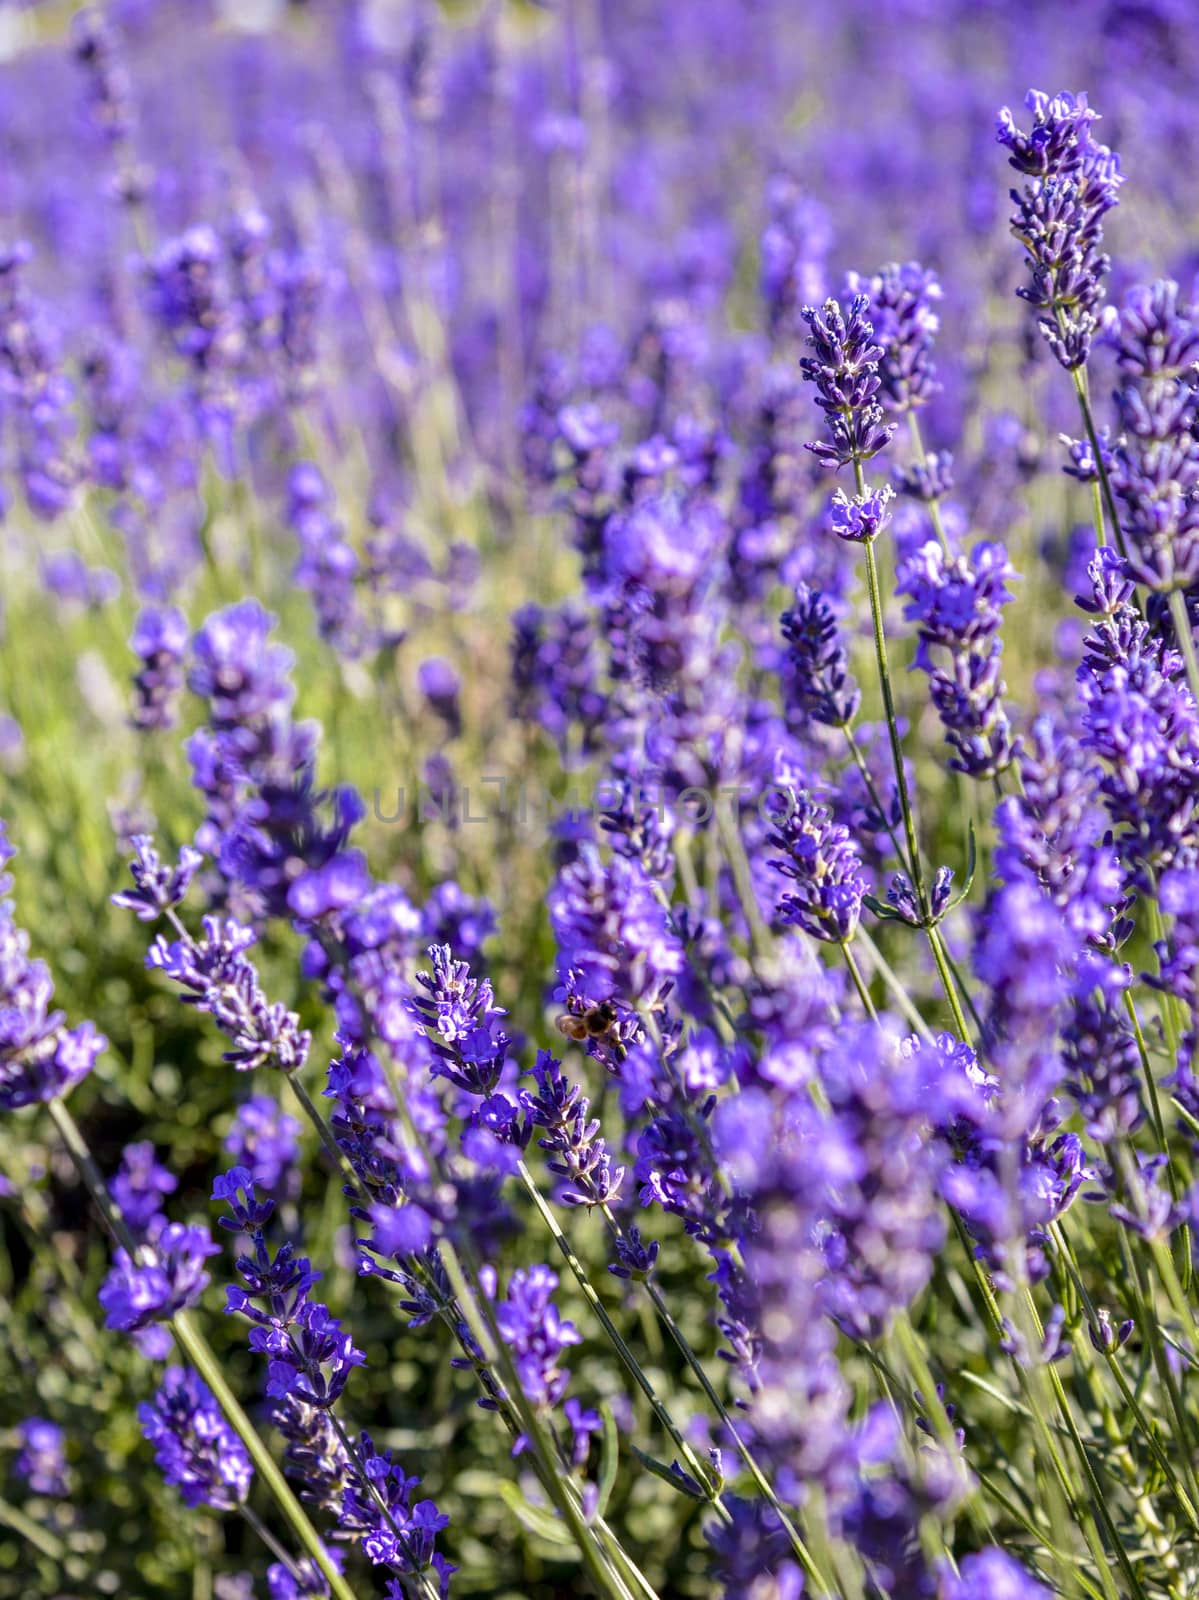 A lots of lavender flower1 by gjeerawut